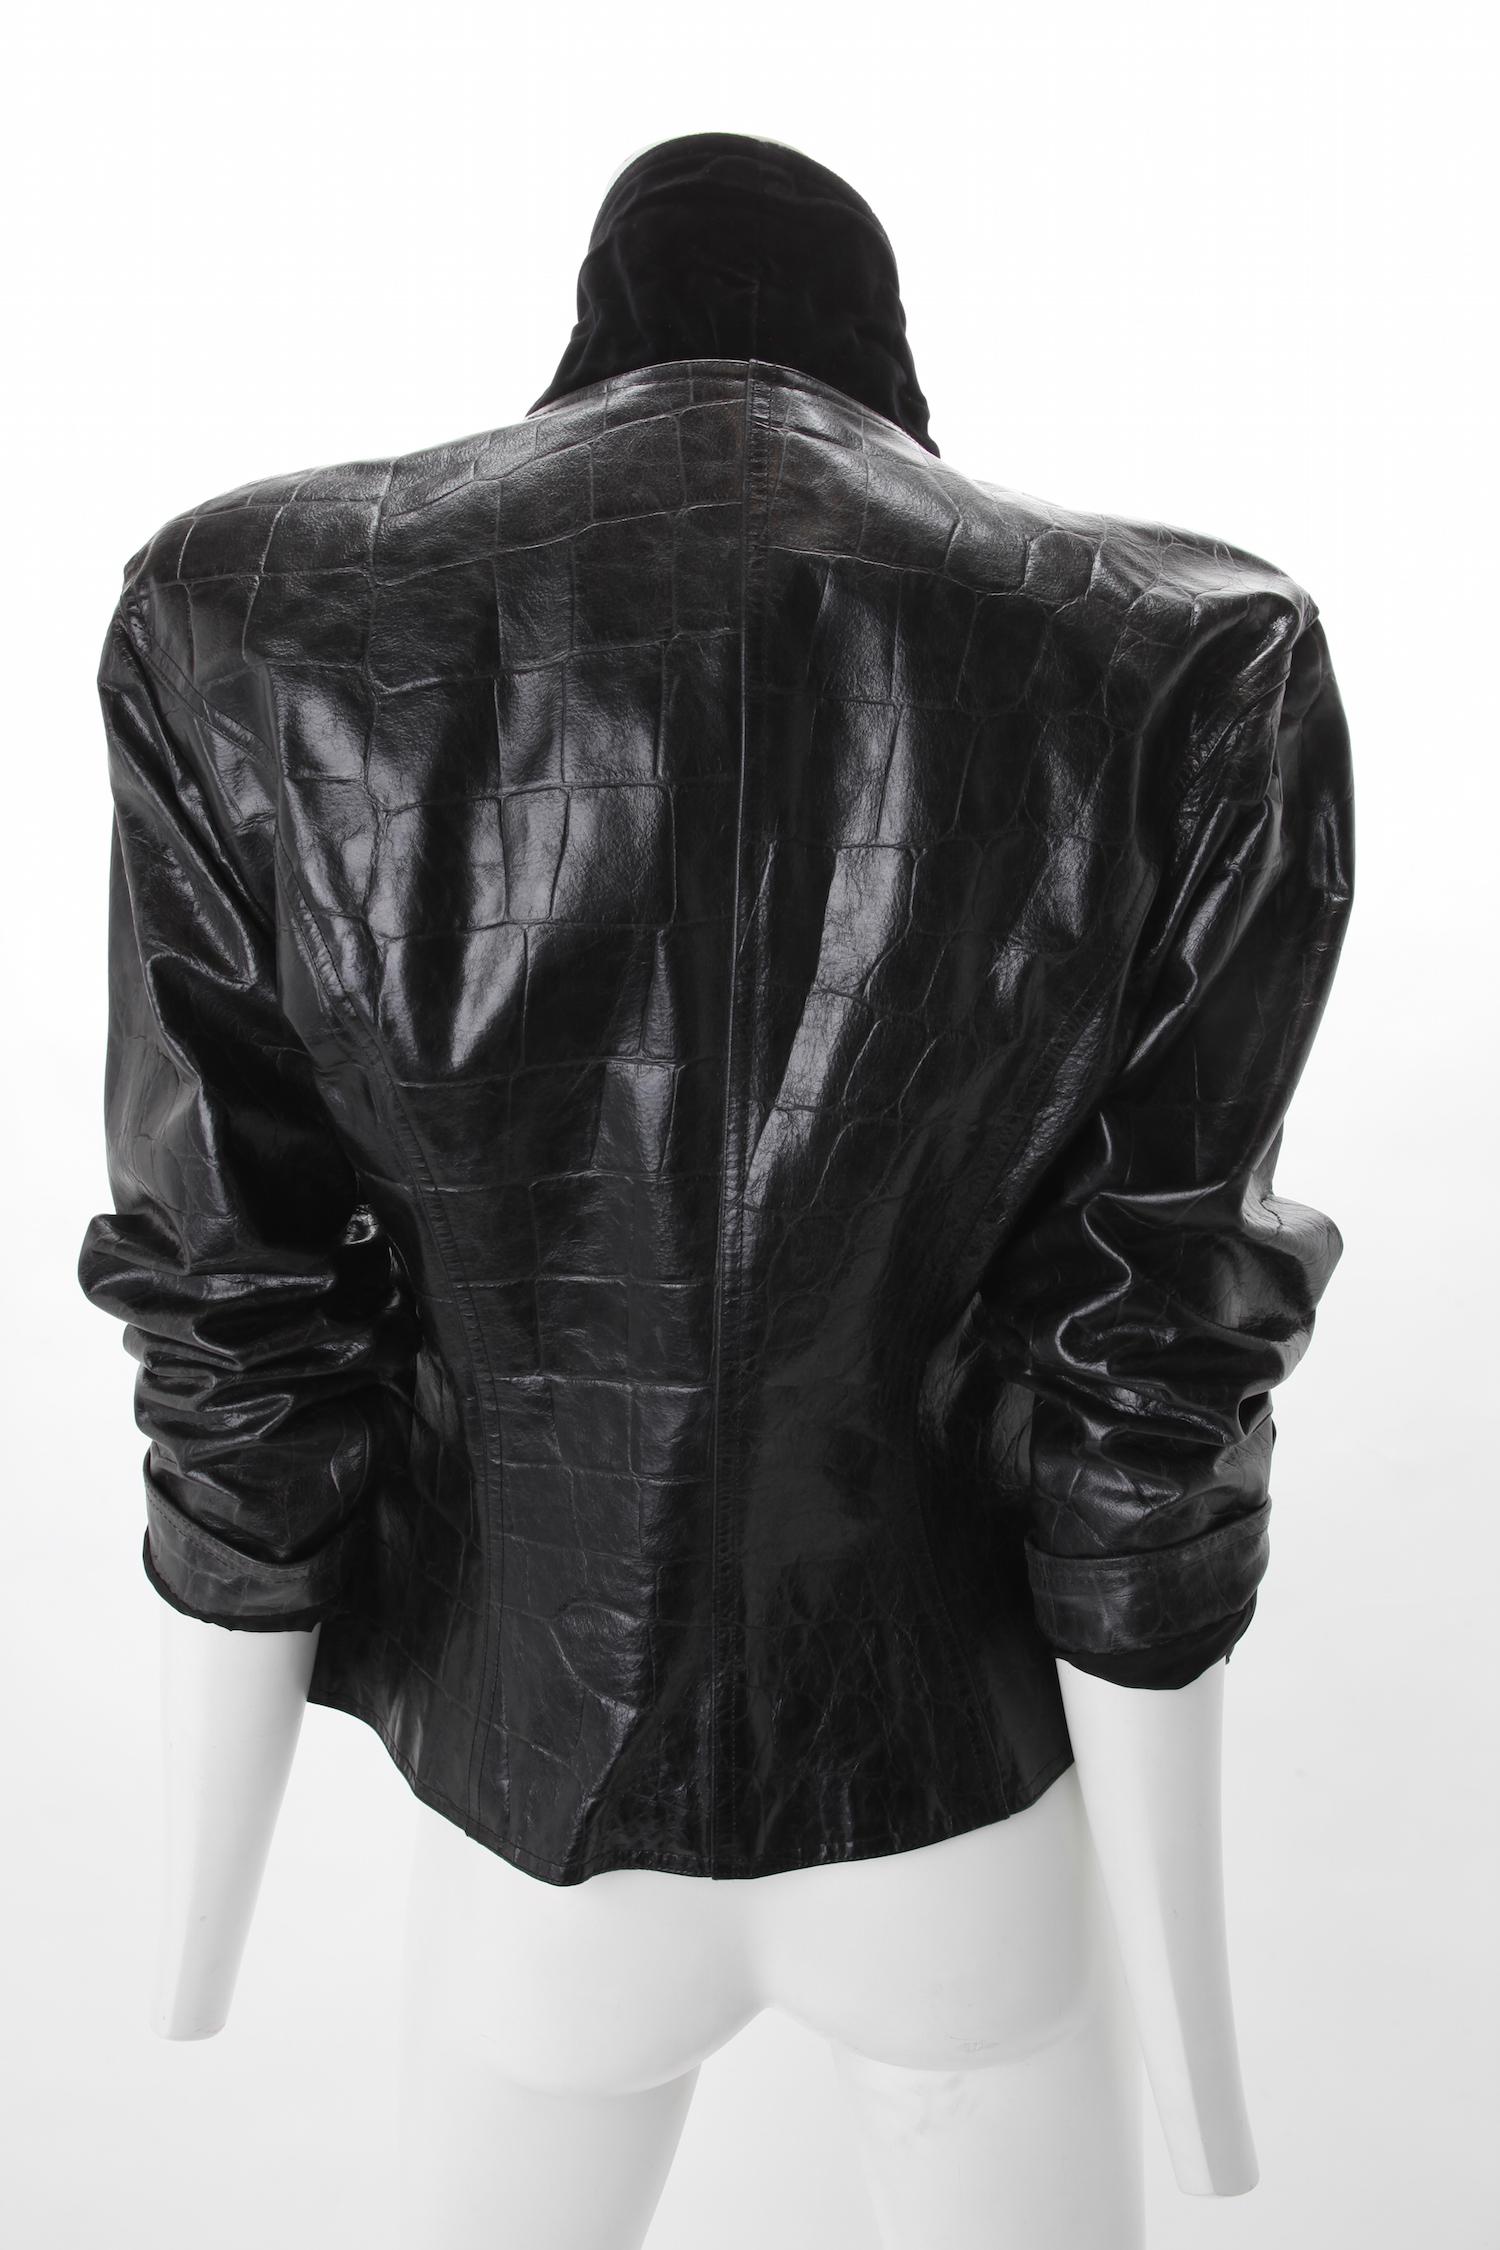 uga leather jacket